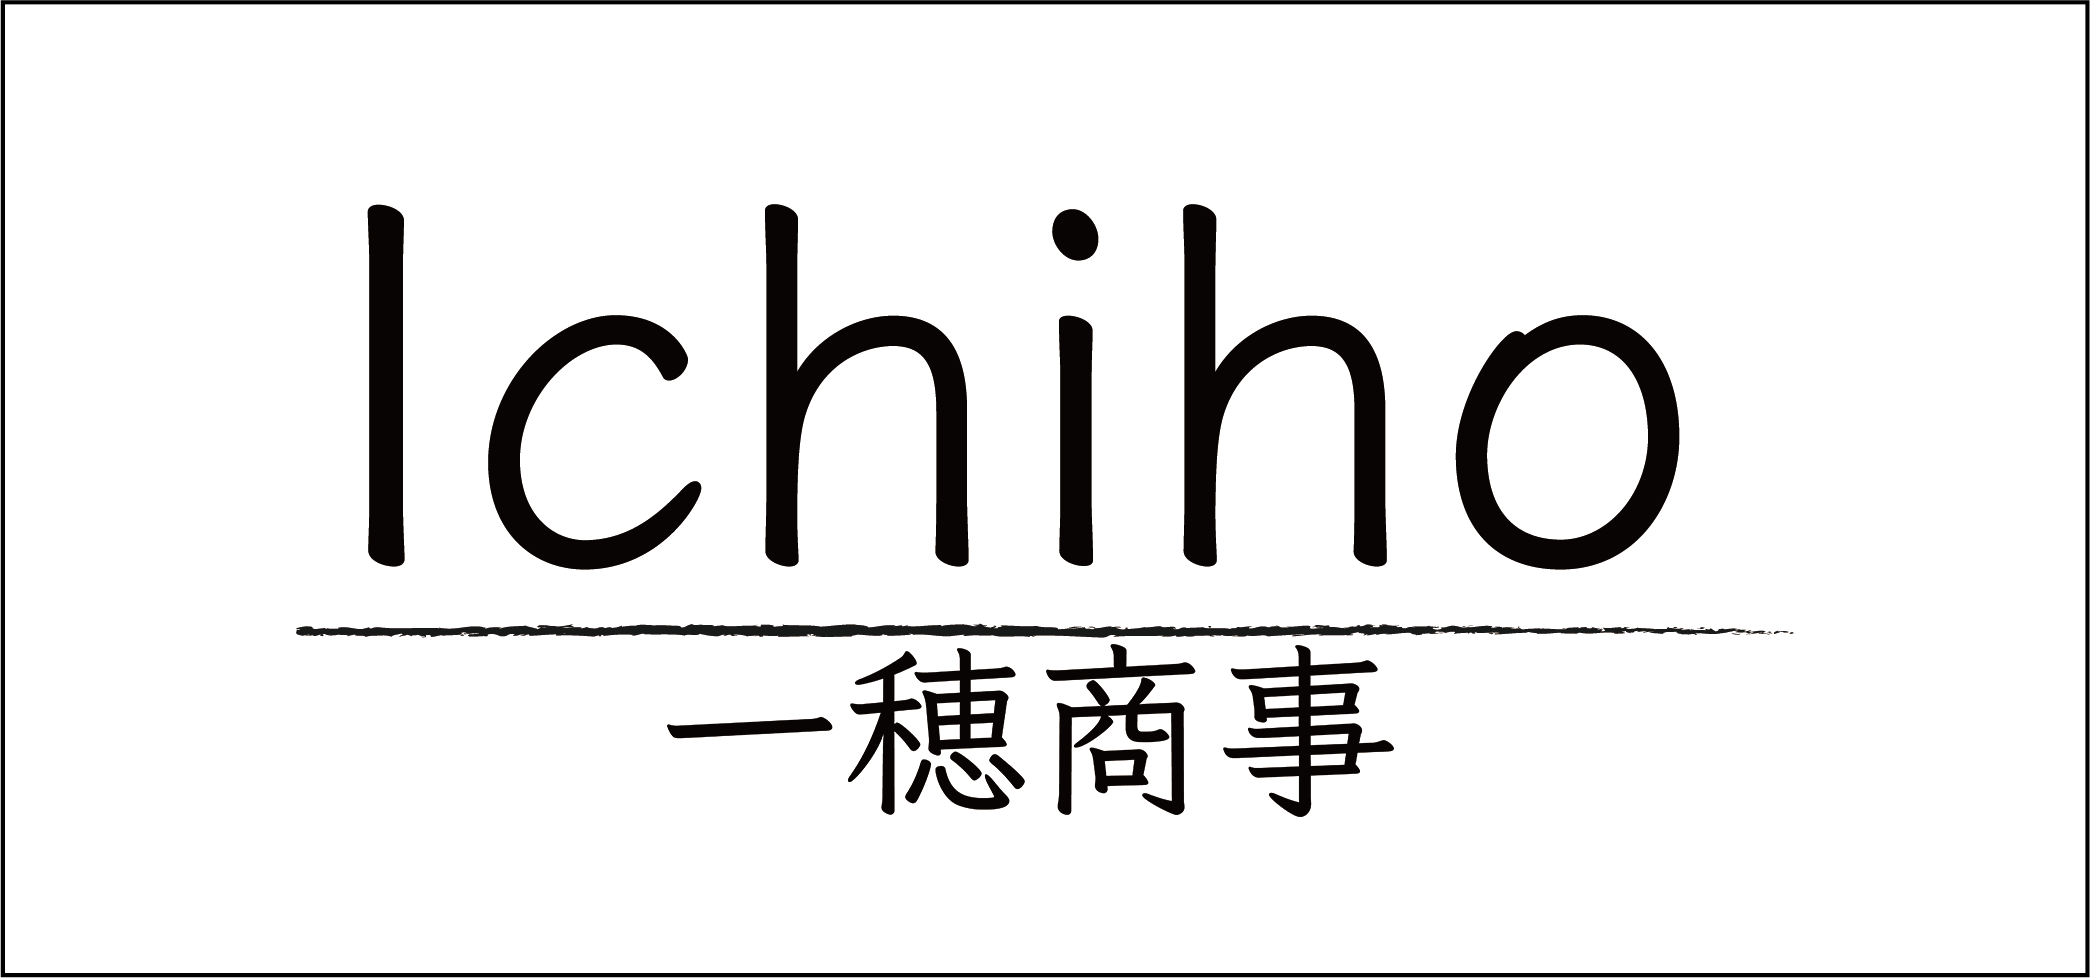 Ichiho